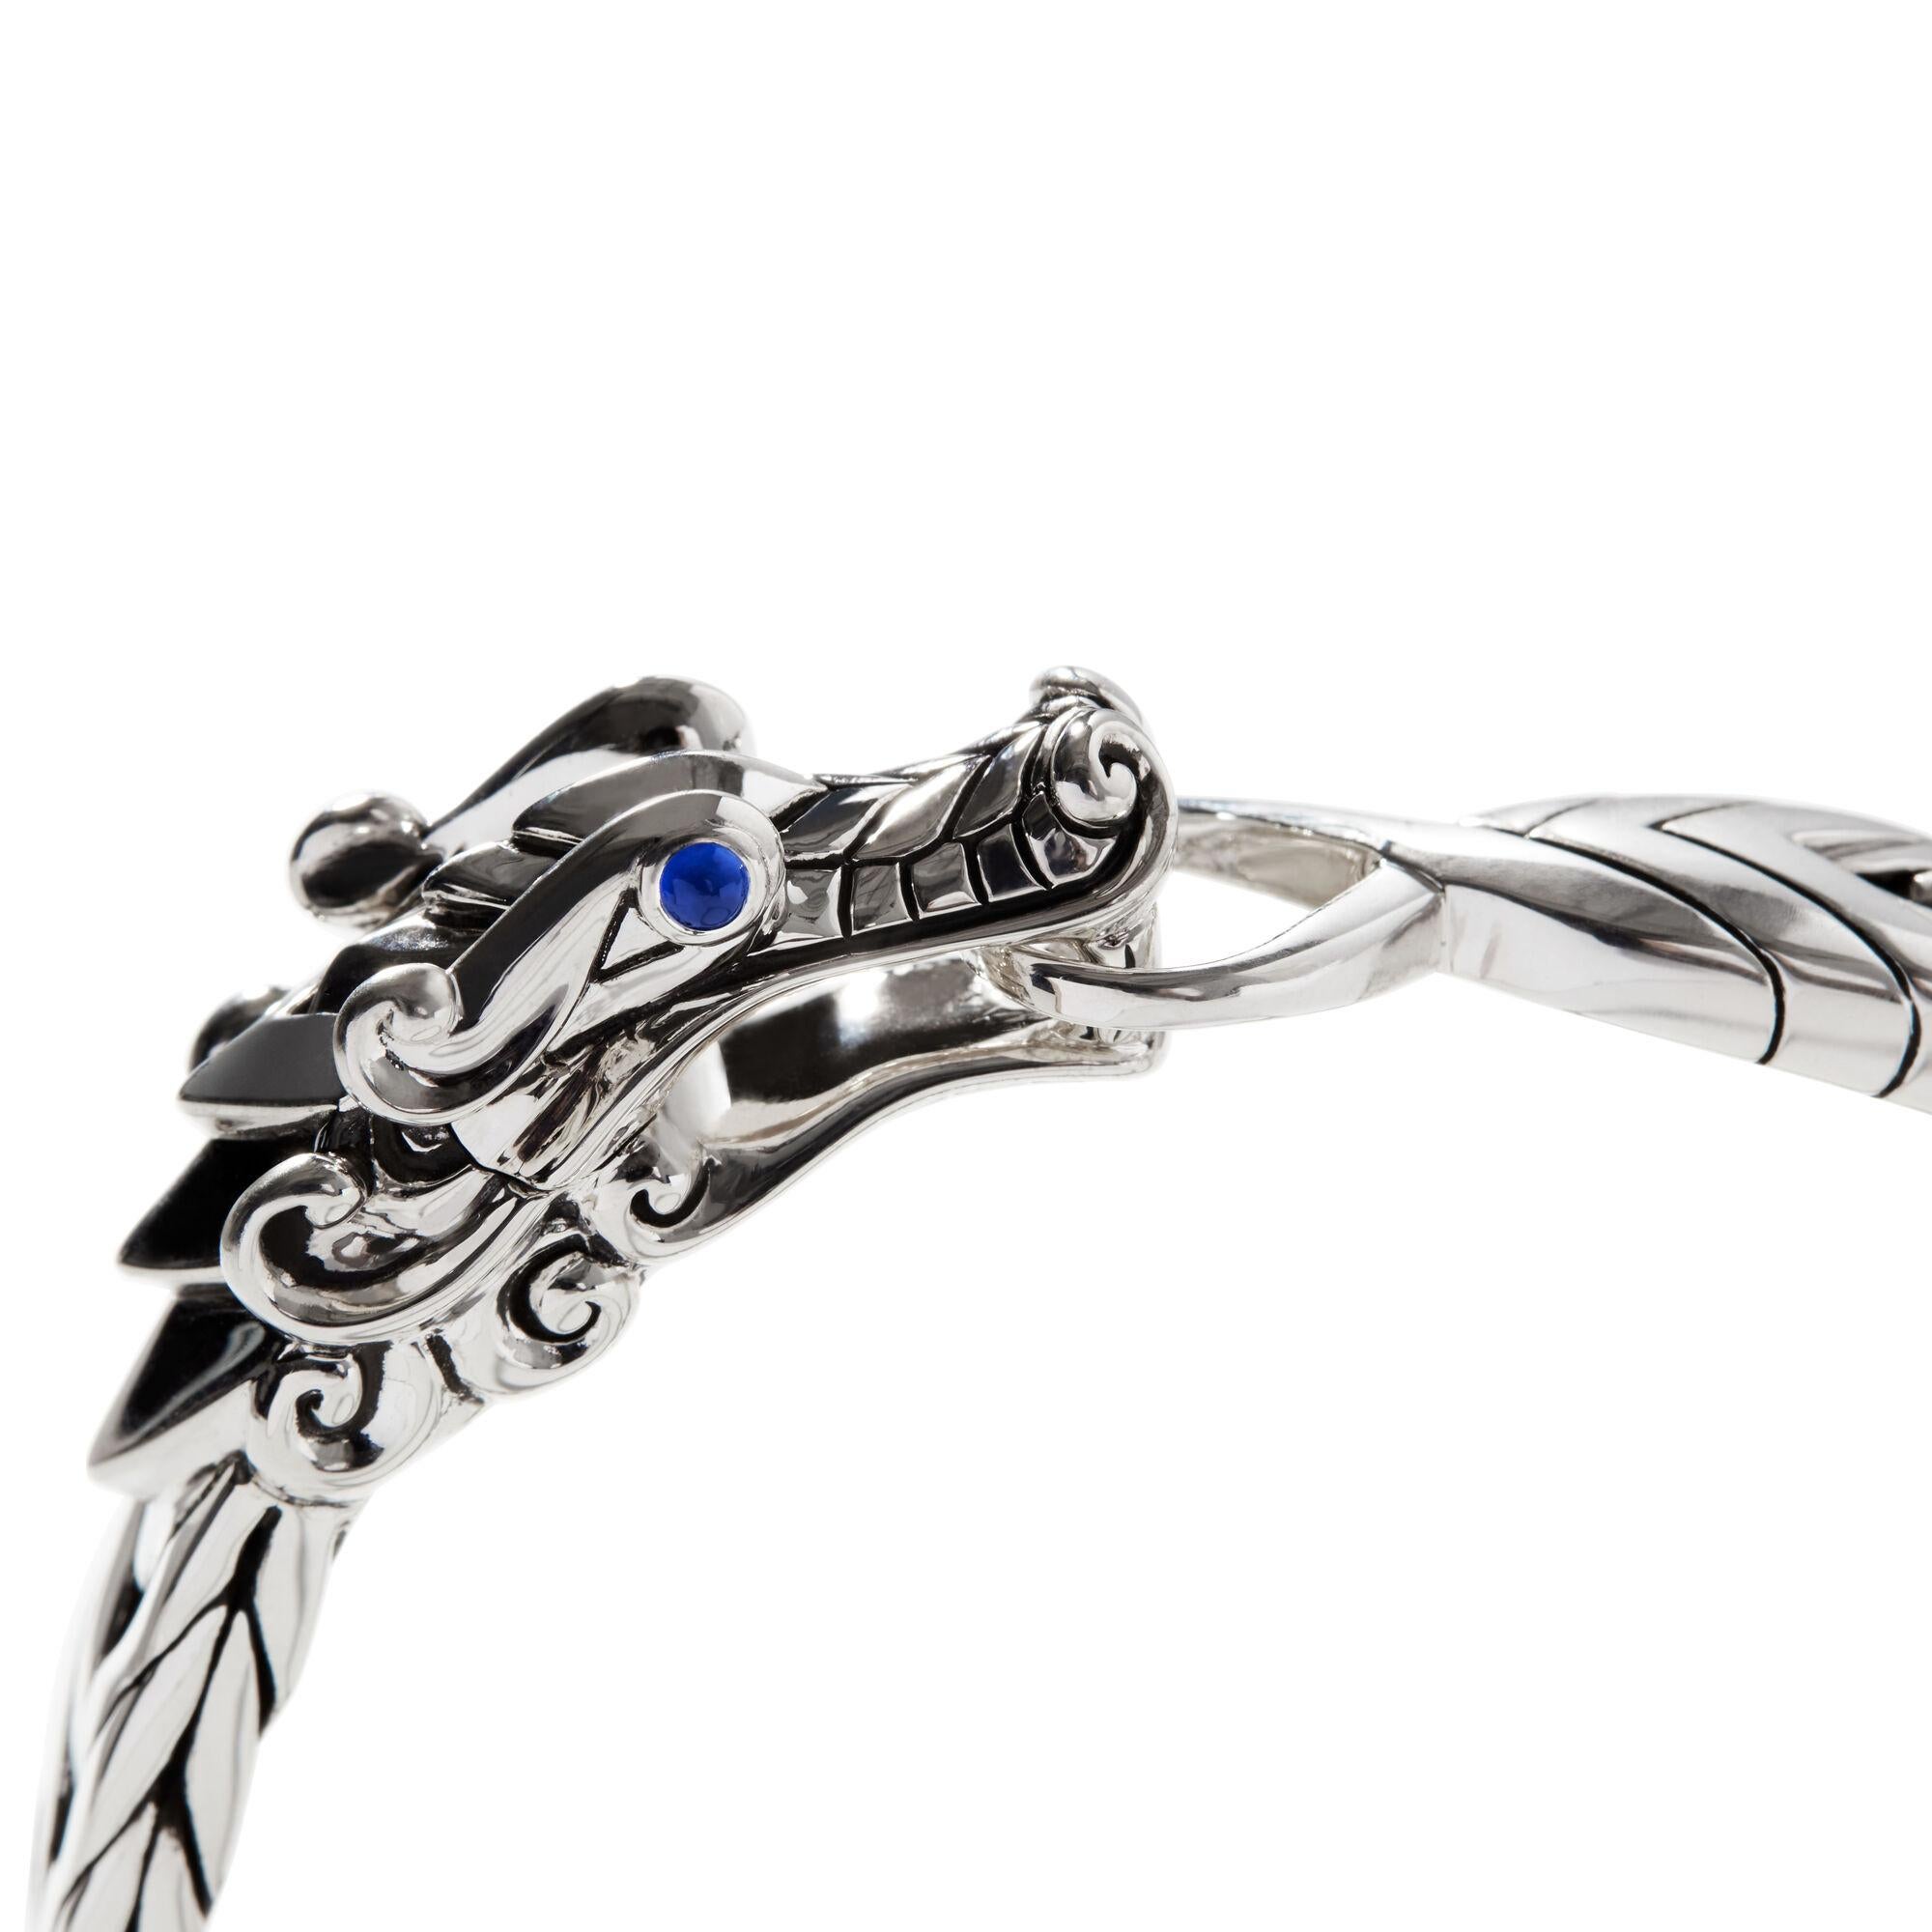 Symbole de dévotion éternelle, le majestueux dragon Naga est la vedette de cet audacieux bracelet pour homme. Réalisé en argent sterling poli avec les maillons modernes caractéristiques de John Hardy et rehaussé de saphirs bleus.

Issu de la